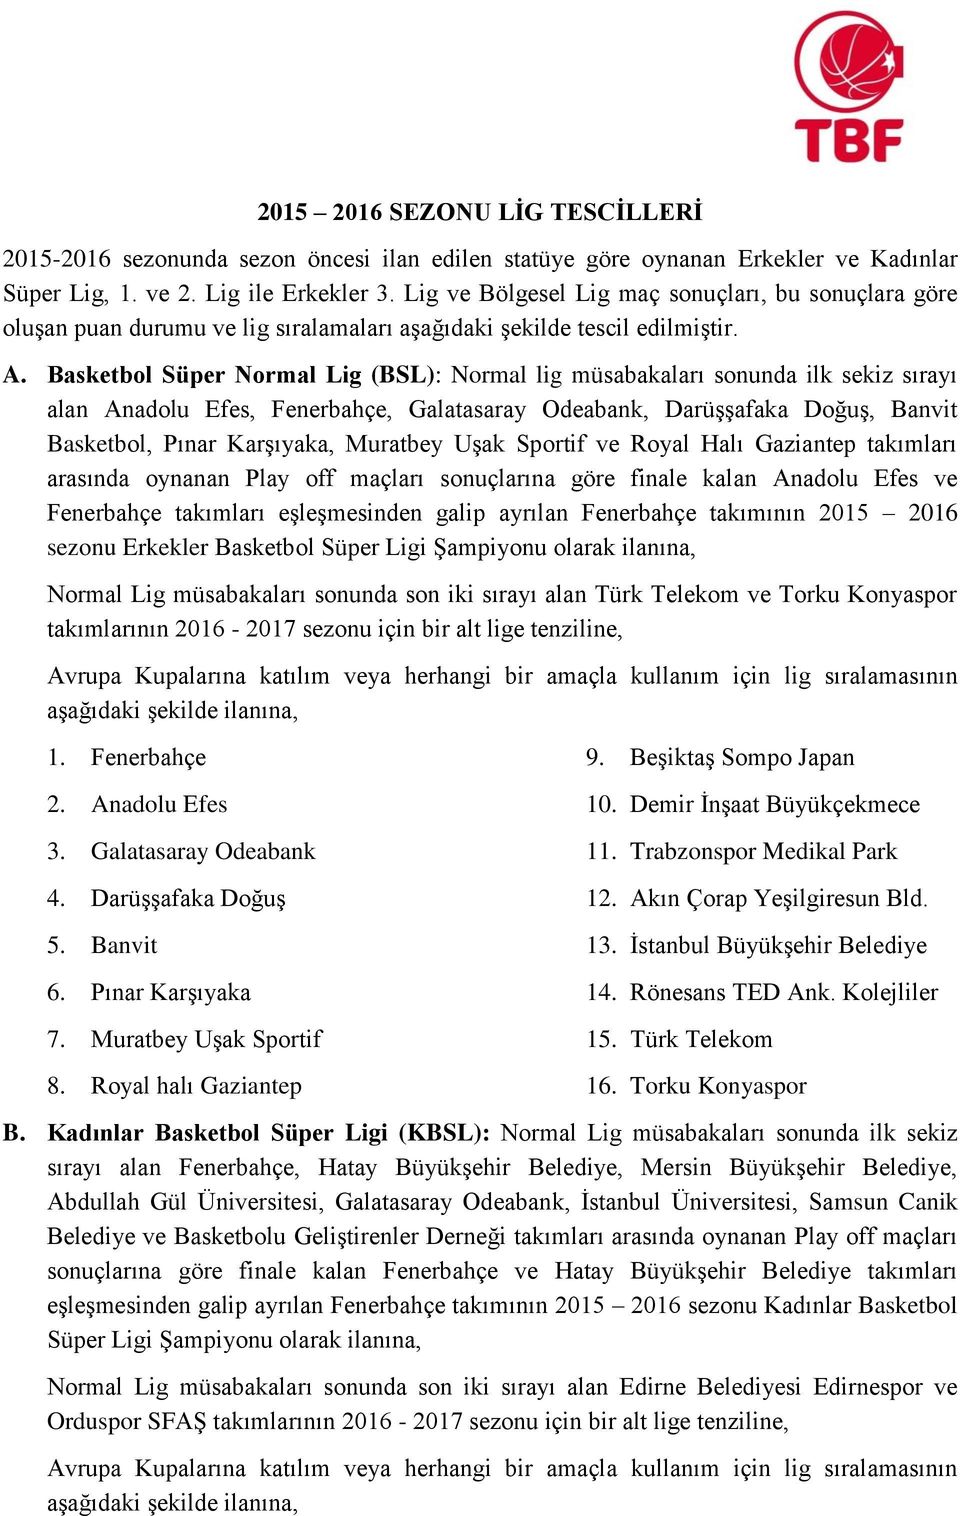 Basketbol Süper Normal Lig (BSL): Normal lig müsabakaları sonunda ilk sekiz sırayı alan Anadolu Efes, Fenerbahçe, Galatasaray Odeabank, Darüşşafaka Doğuş, Banvit Basketbol, Pınar Karşıyaka, Muratbey